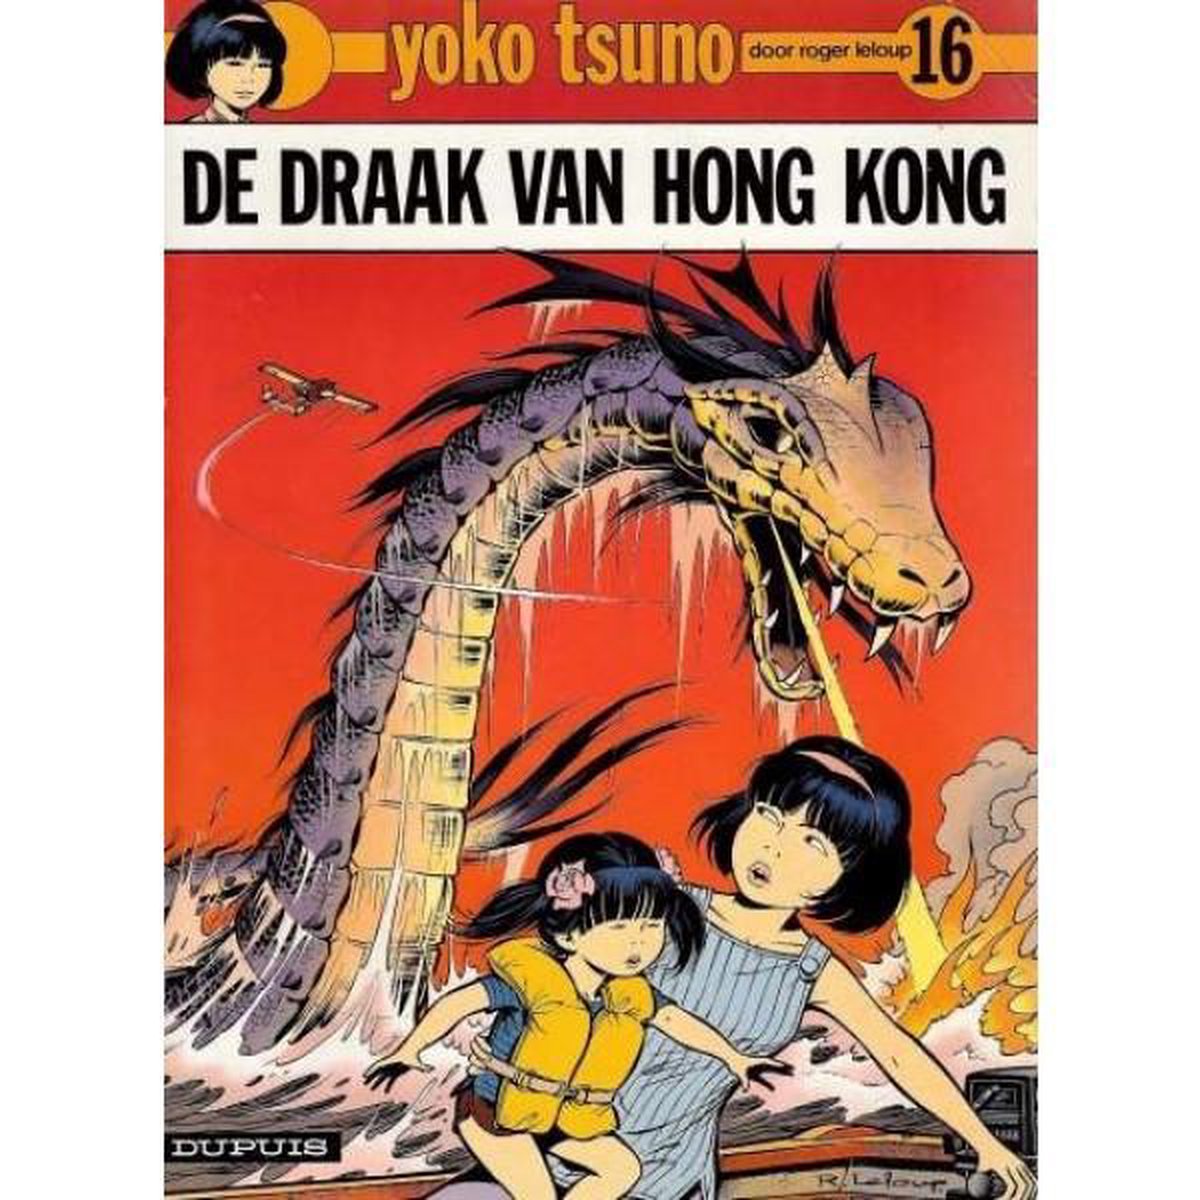 De Draak van Hong Kong, Yoko Tsuno nr 16